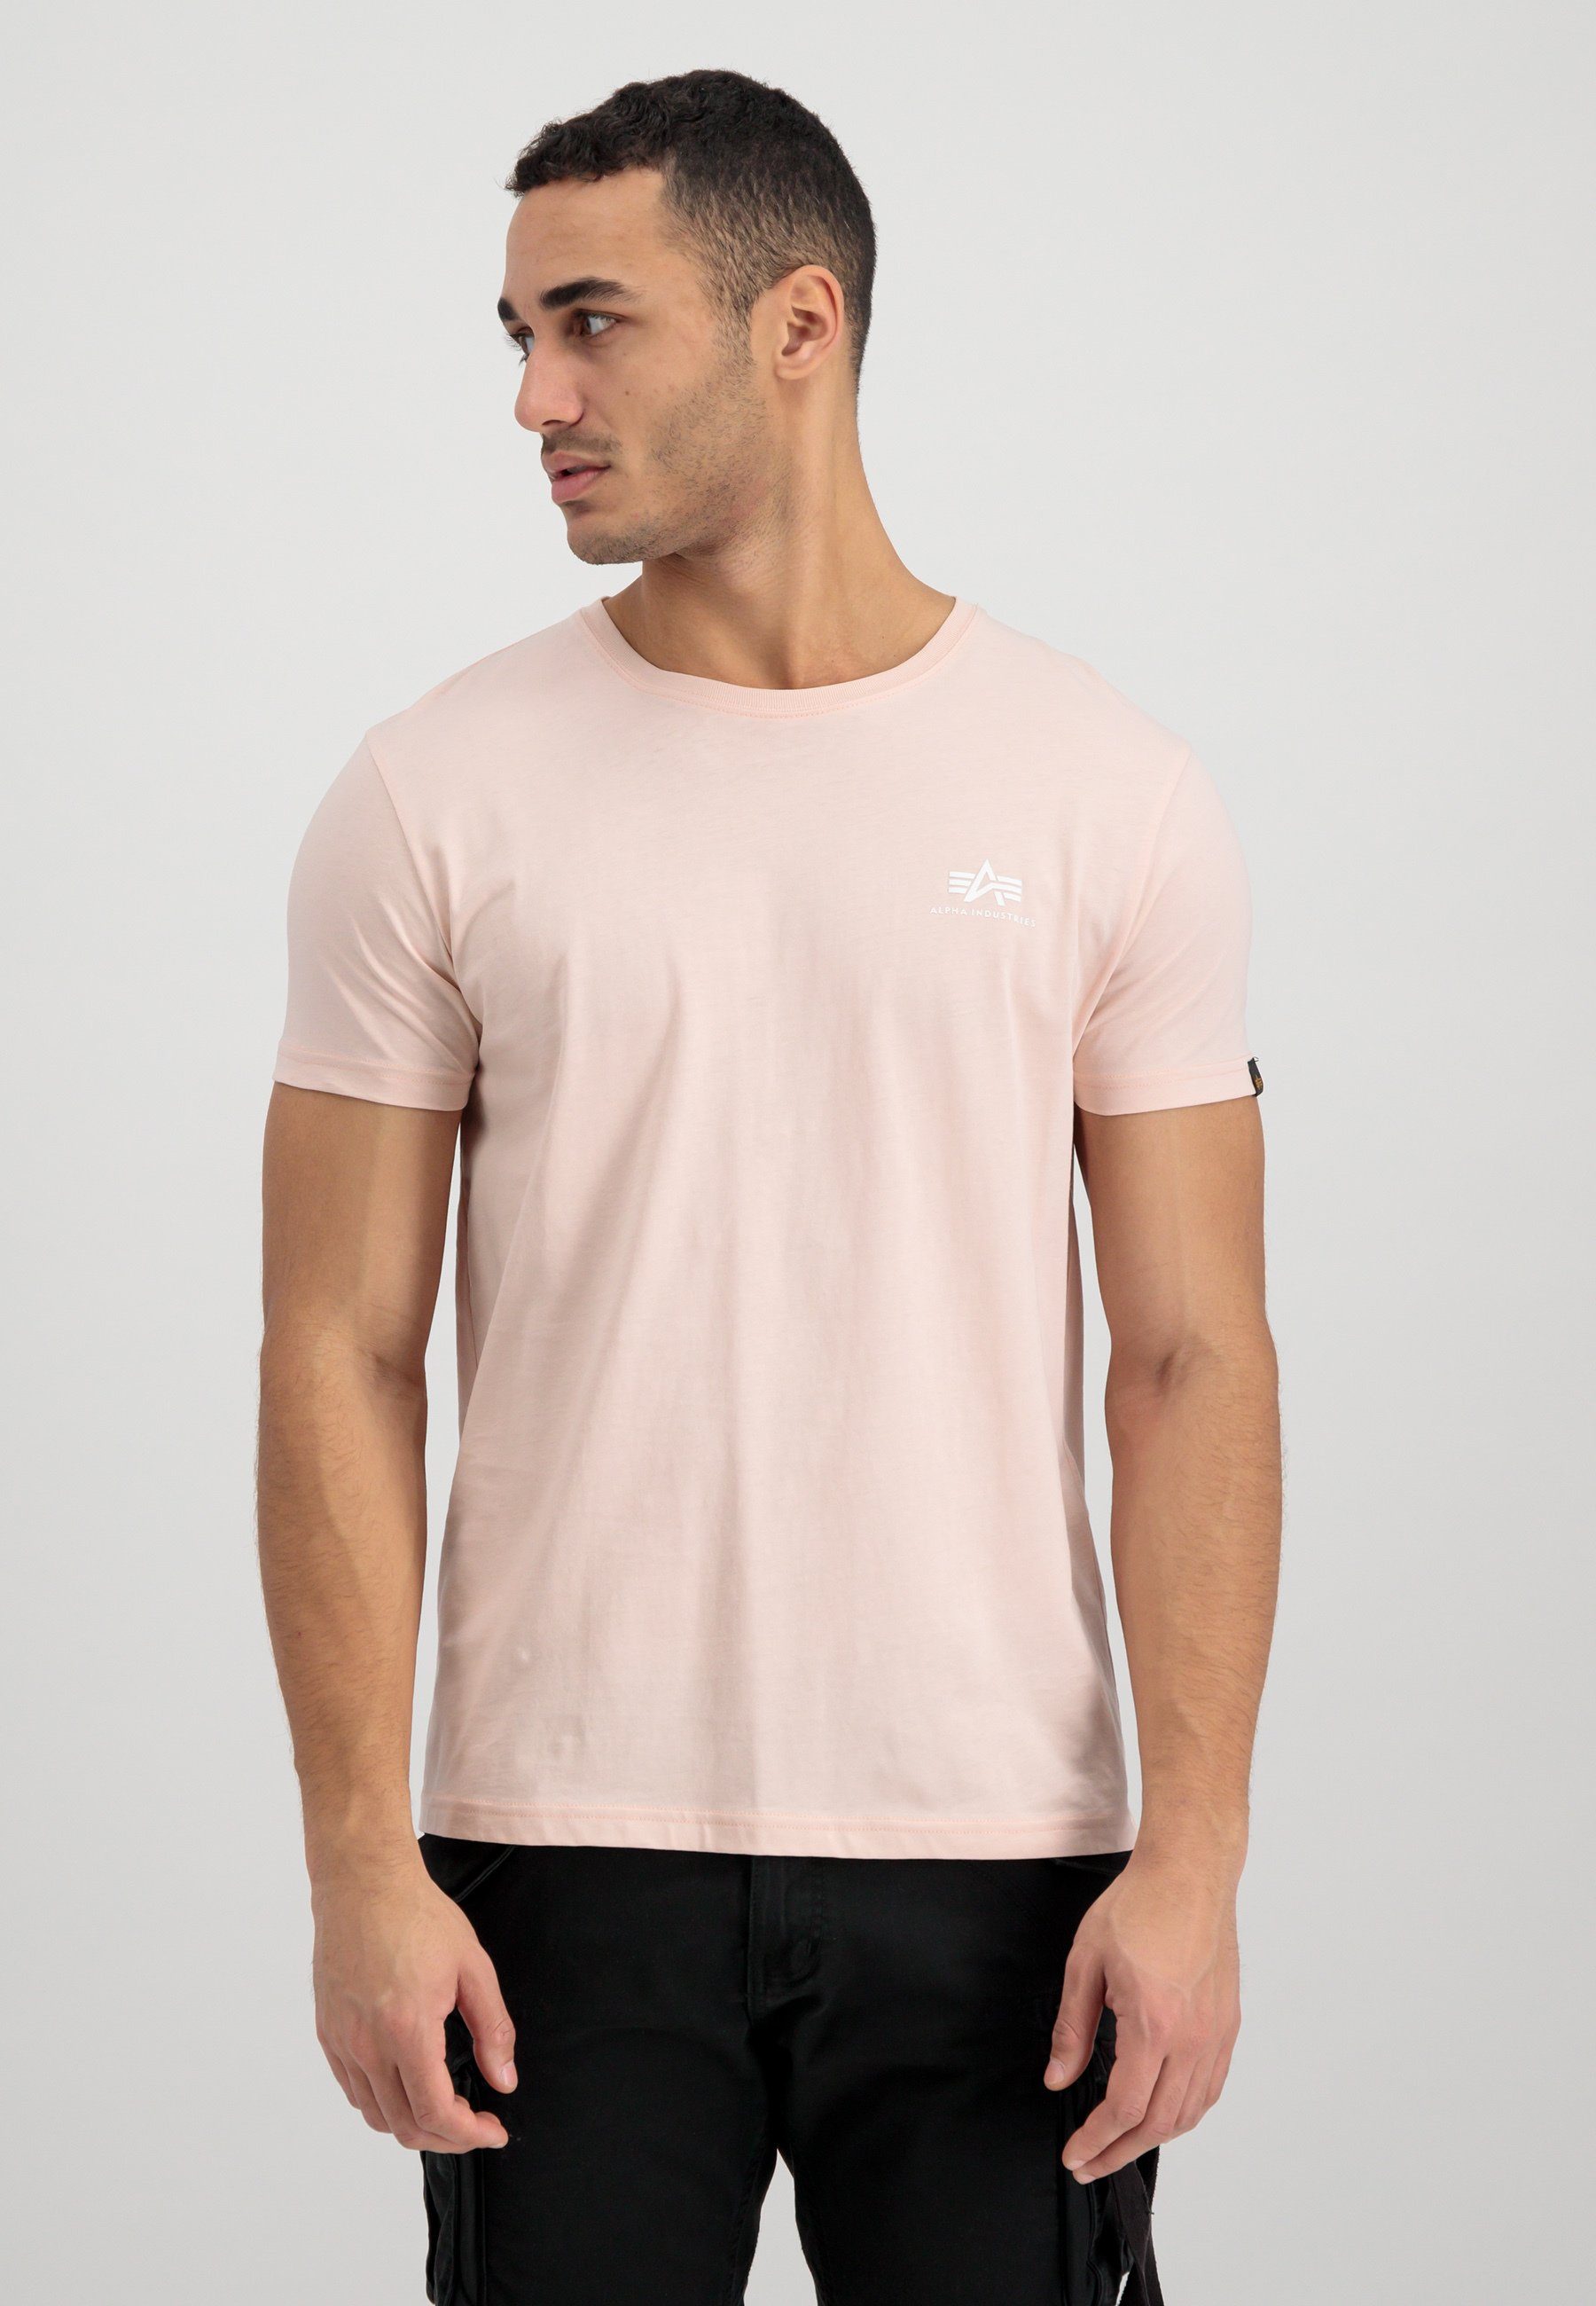 T - Men Industries Alpha Industries T-Shirt pink T-Shirts Backprint Alpha